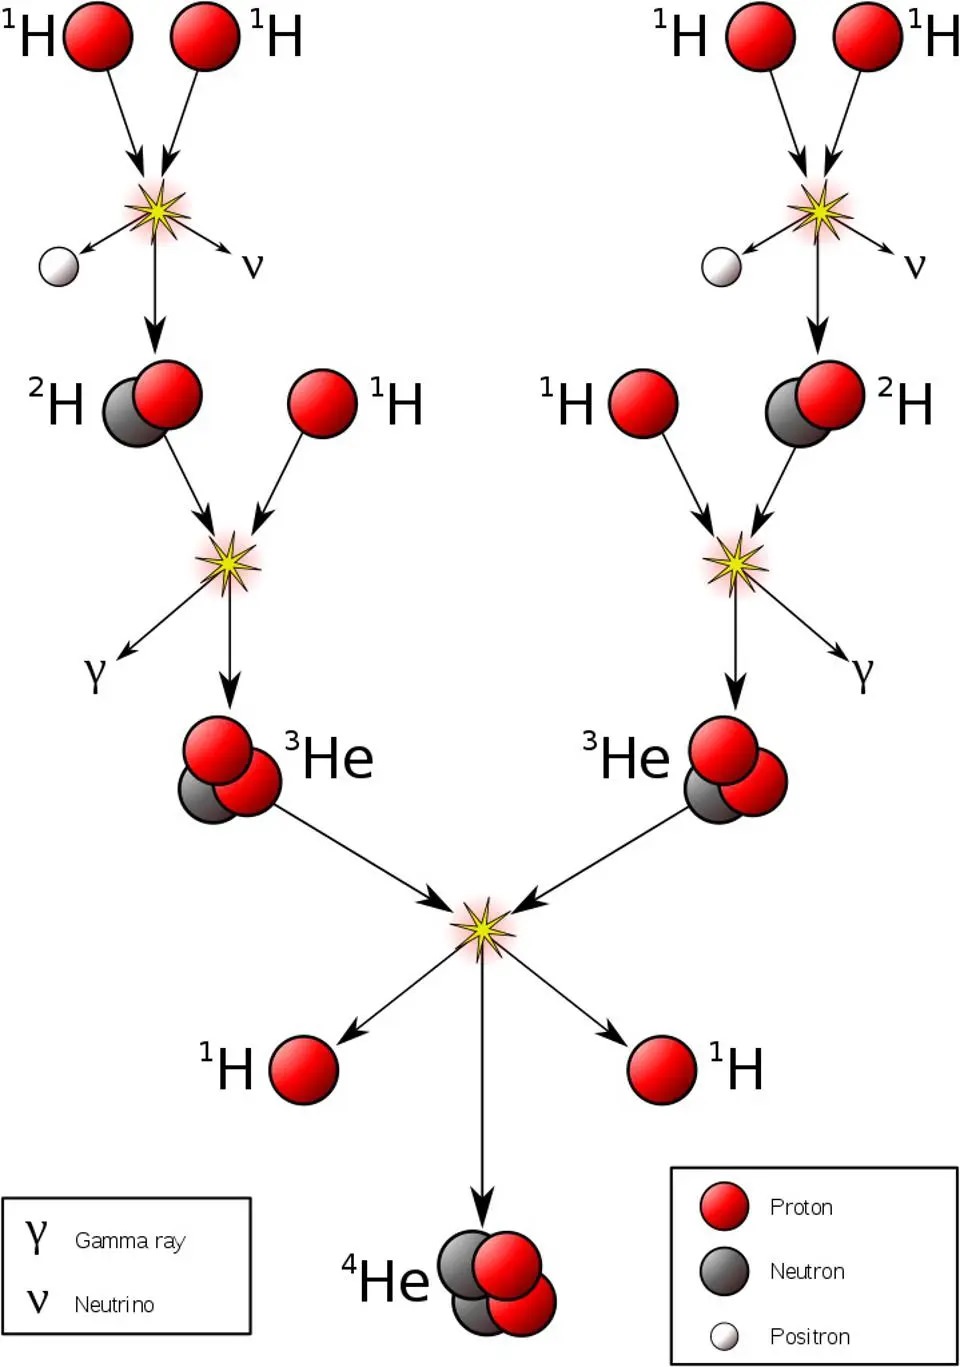 ساده‌ترین و کم‌انرژی‌ترین نسخه‌ی زنجیره پروتون-پروتون که هلیوم-۴ را از سوخت هیدروژن اولیه تولید می‌کند.